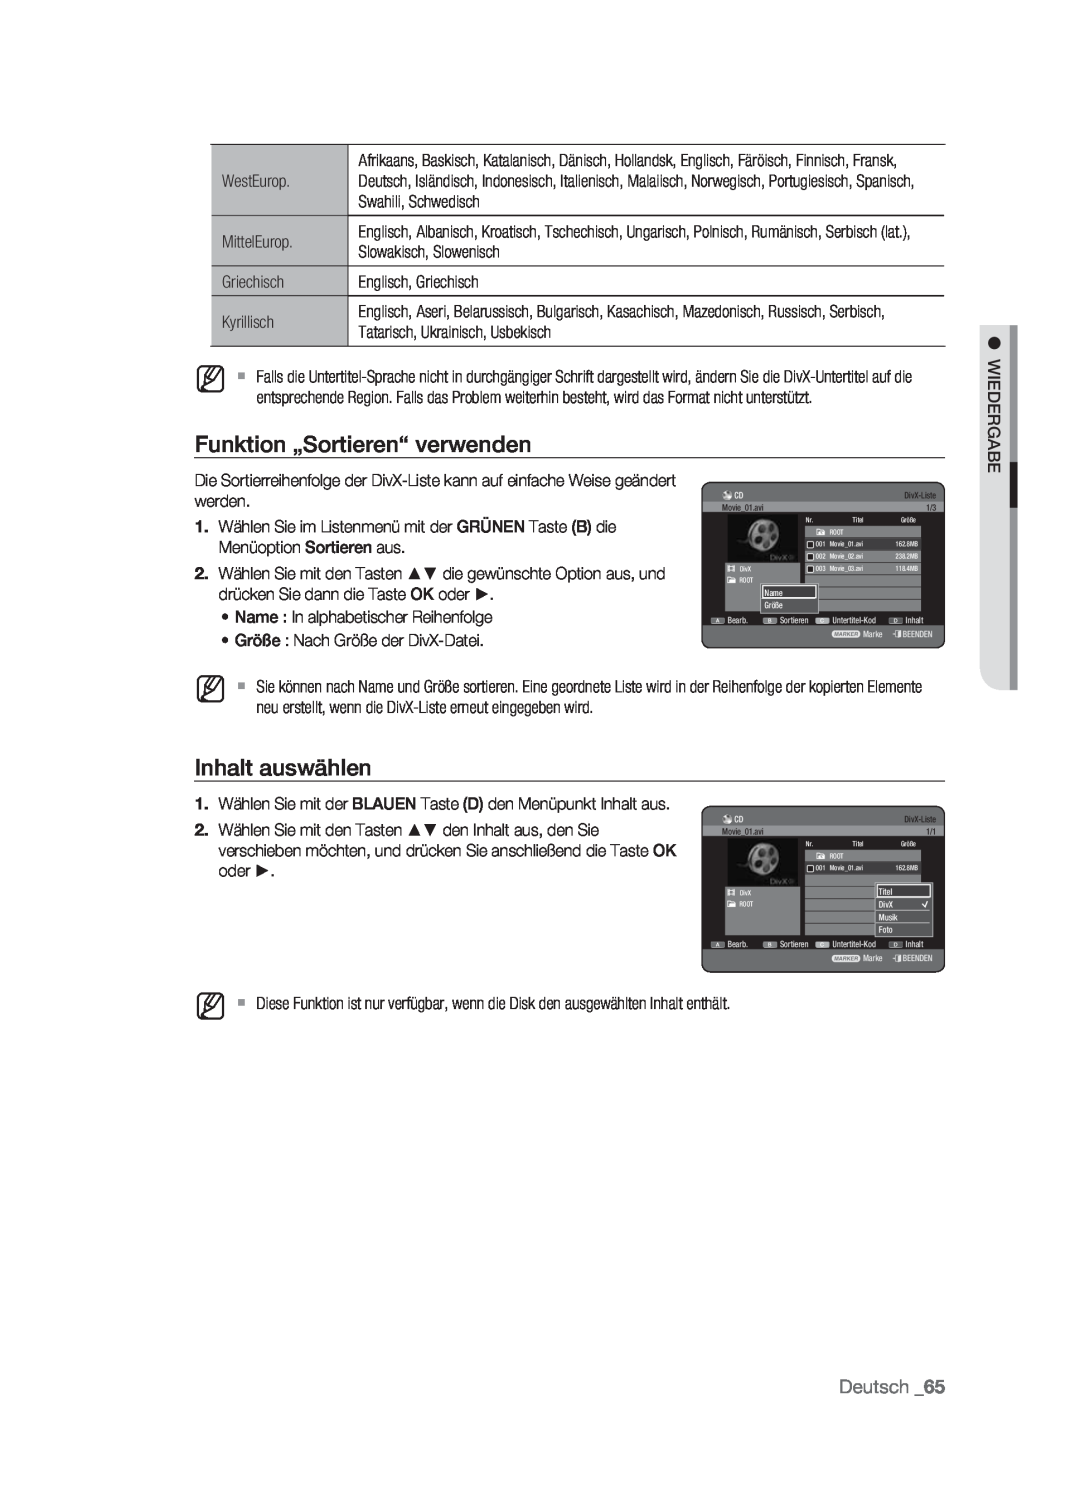 Samsung DVD-HR773/XEB, DVD-HR773/XEN, DVD-HR773/XEG Funktion „Sortieren“ verwenden, Inhalt auswählen, Deutsch, Movie01.avi 